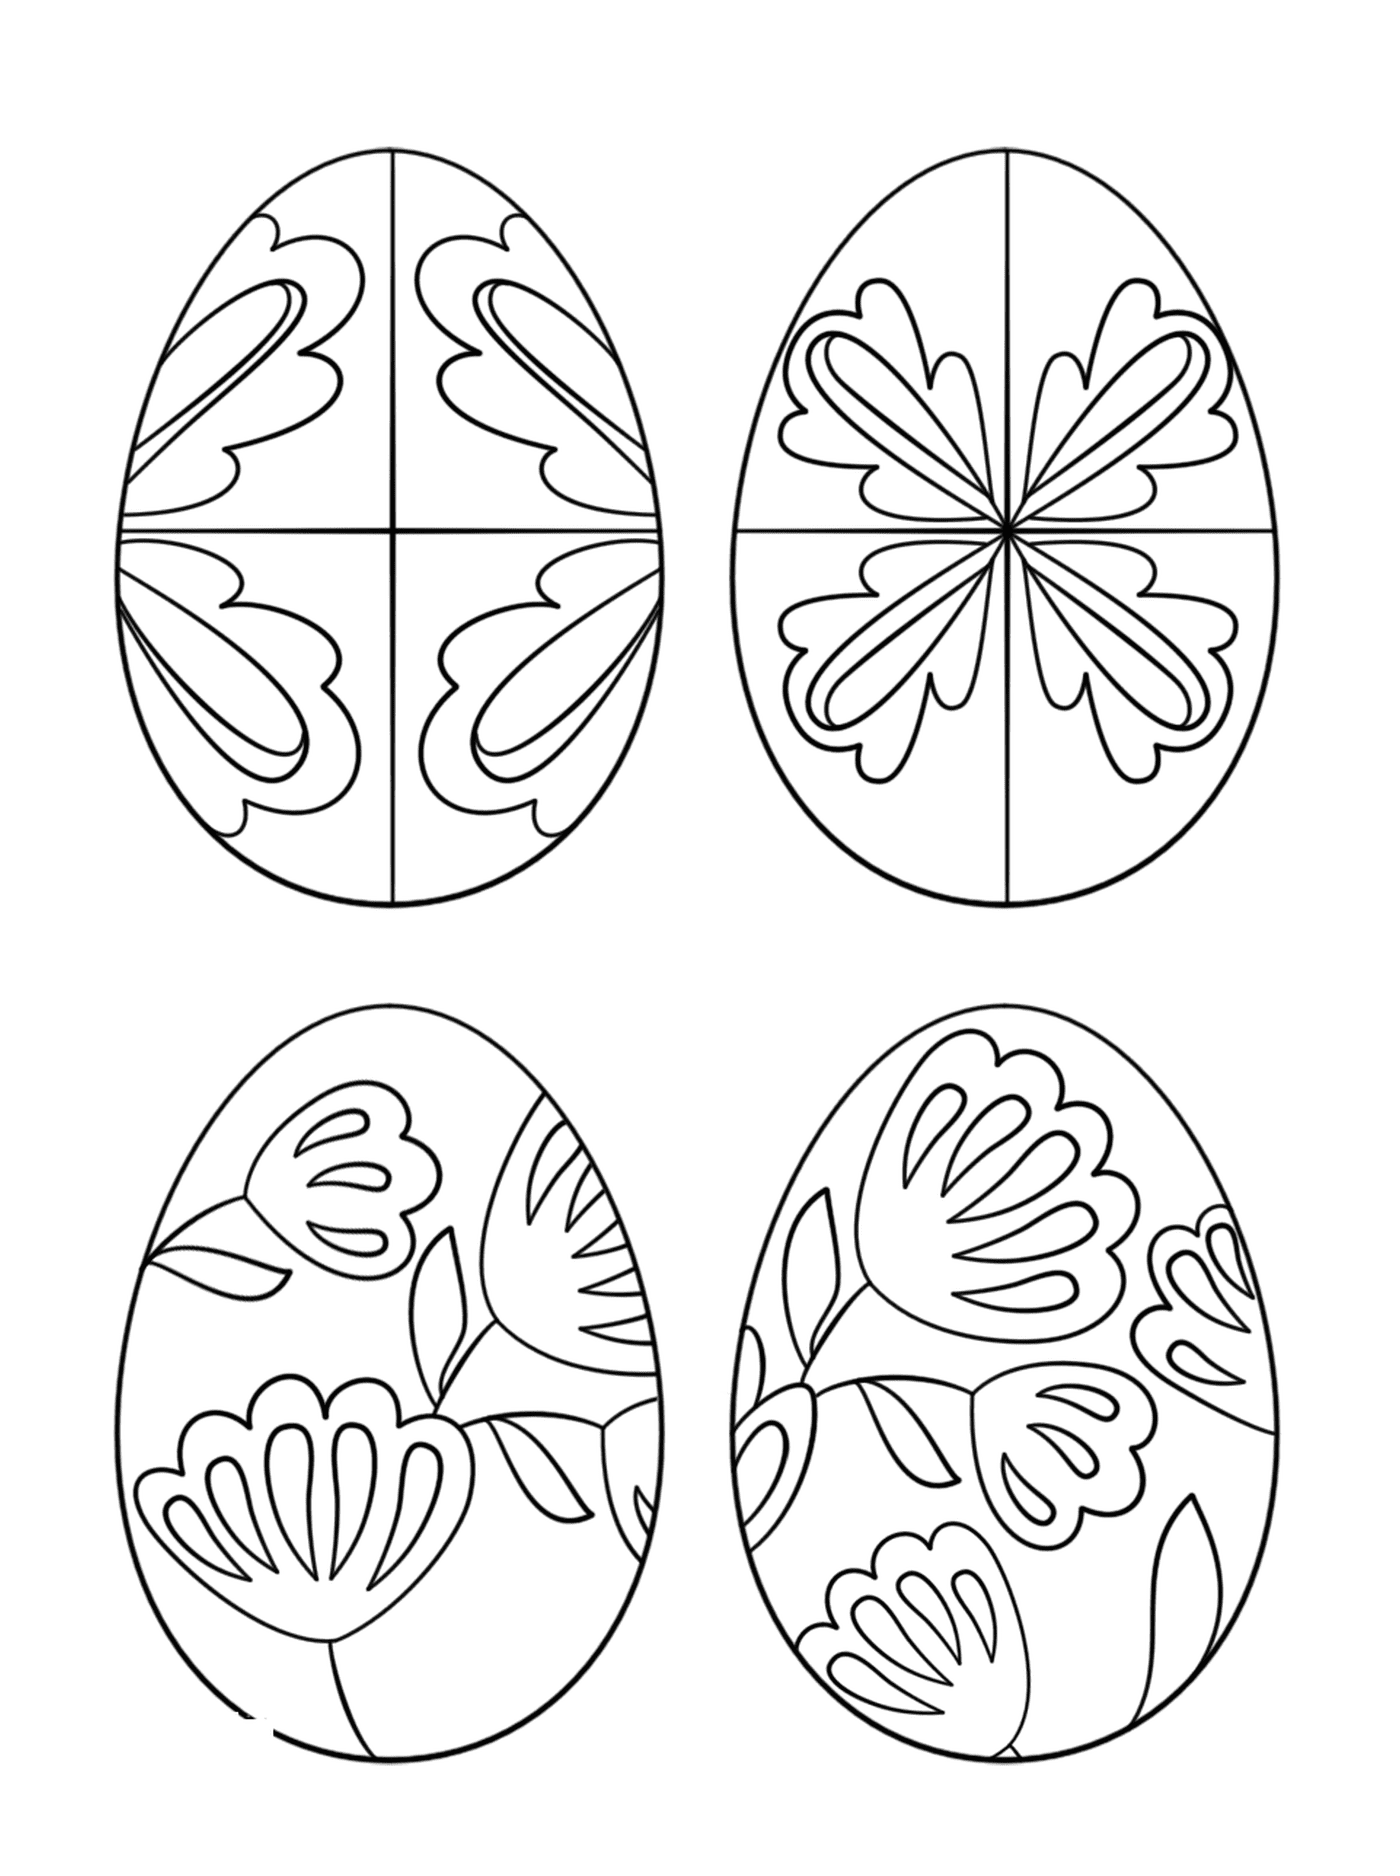  Uova Pysanky, un set di uova di Pasqua decorate con diversi modelli 